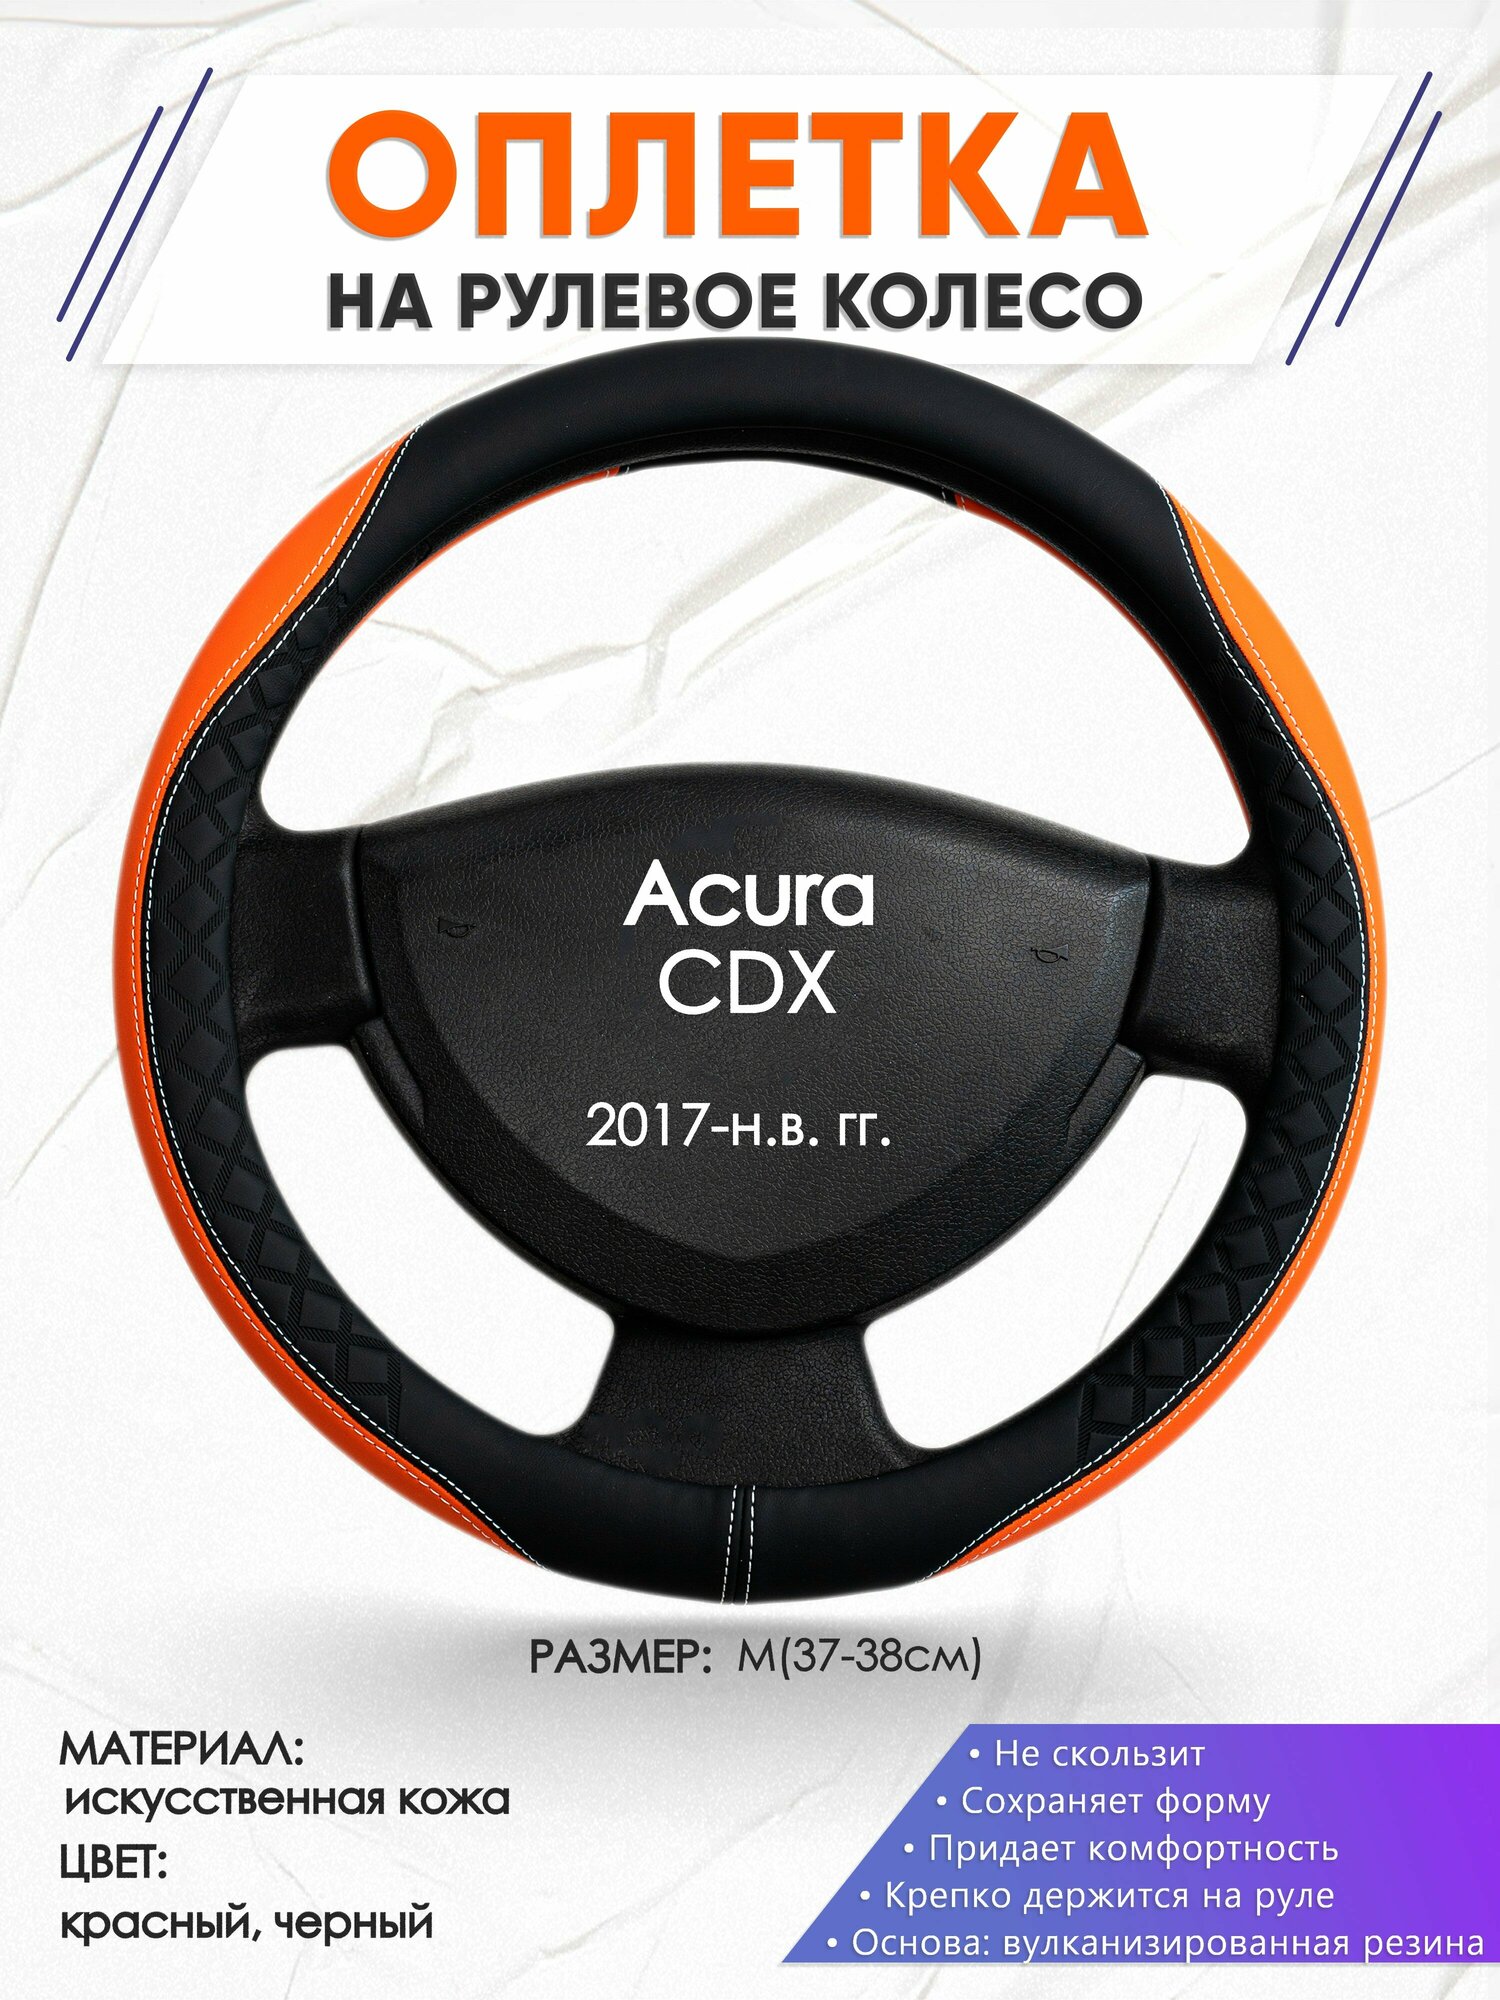 Оплетка наруль для Acura CDX(Акура СДХ) 2017-н.в. годов выпуска, размер M(37-38см), Искусственная кожа 69